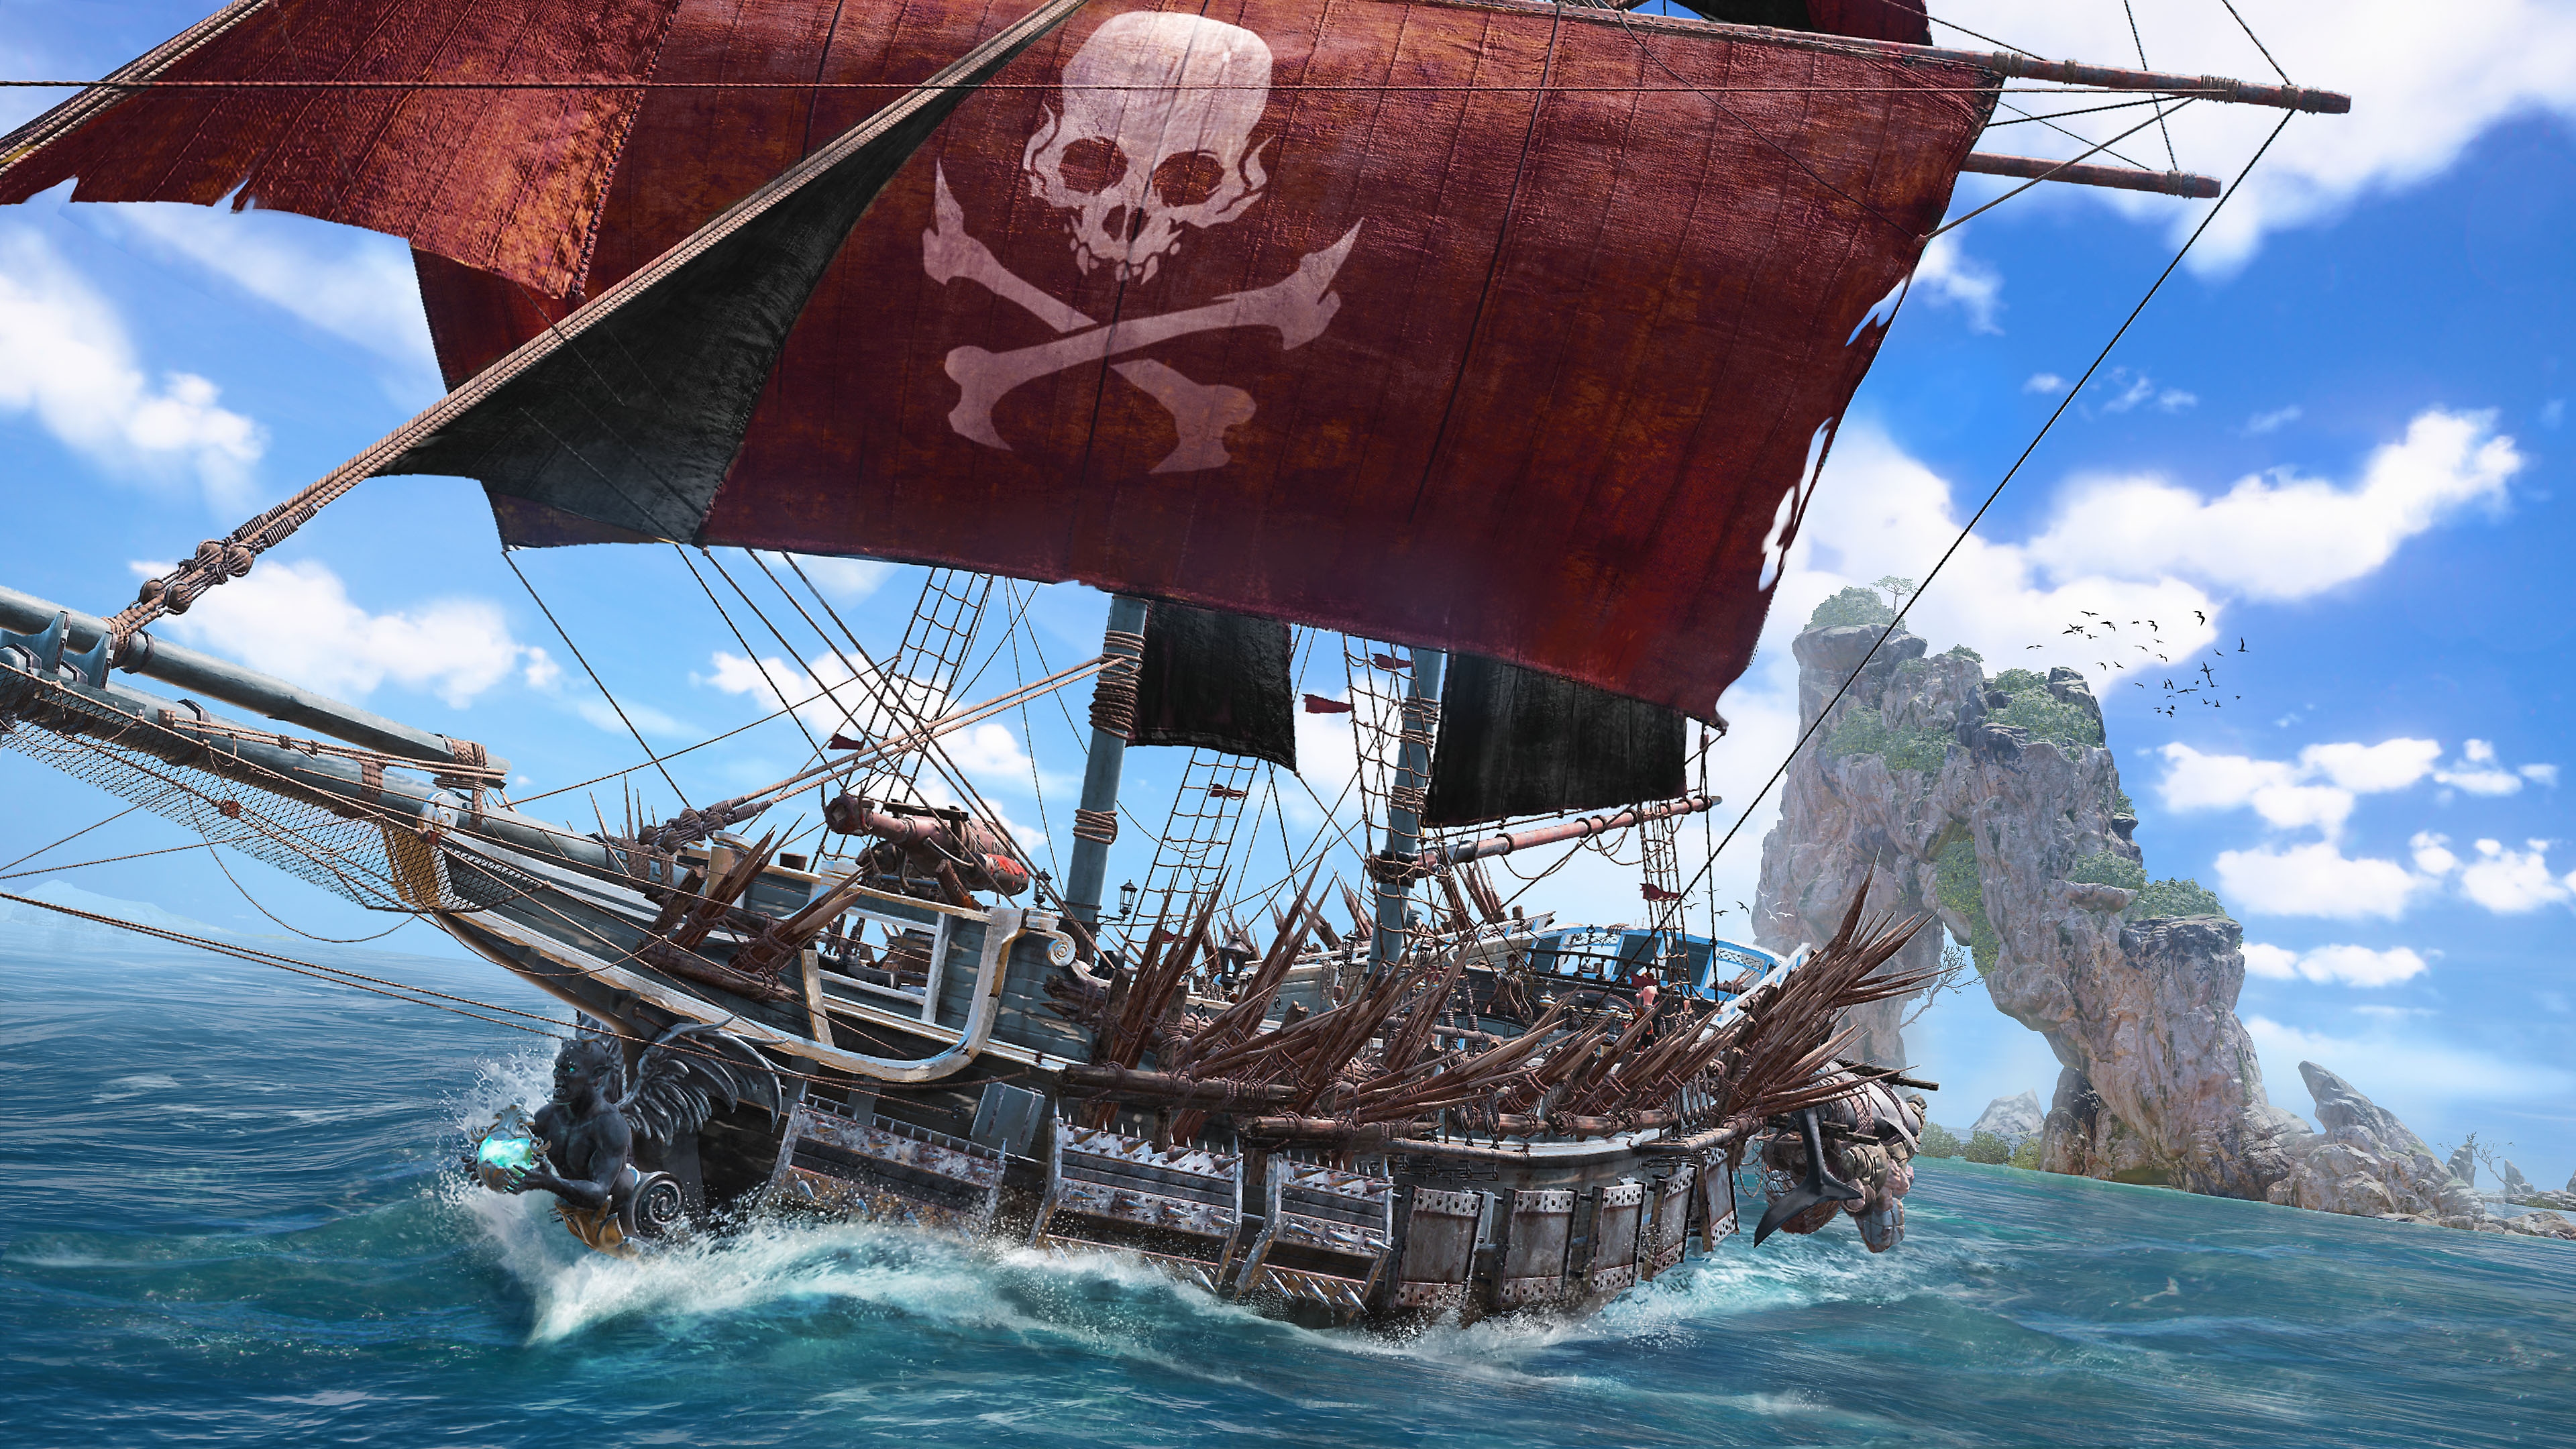 Skull & Bones - captura de tela mostrando navio pirata com caveira e ossos cruzados na vela central vermelha